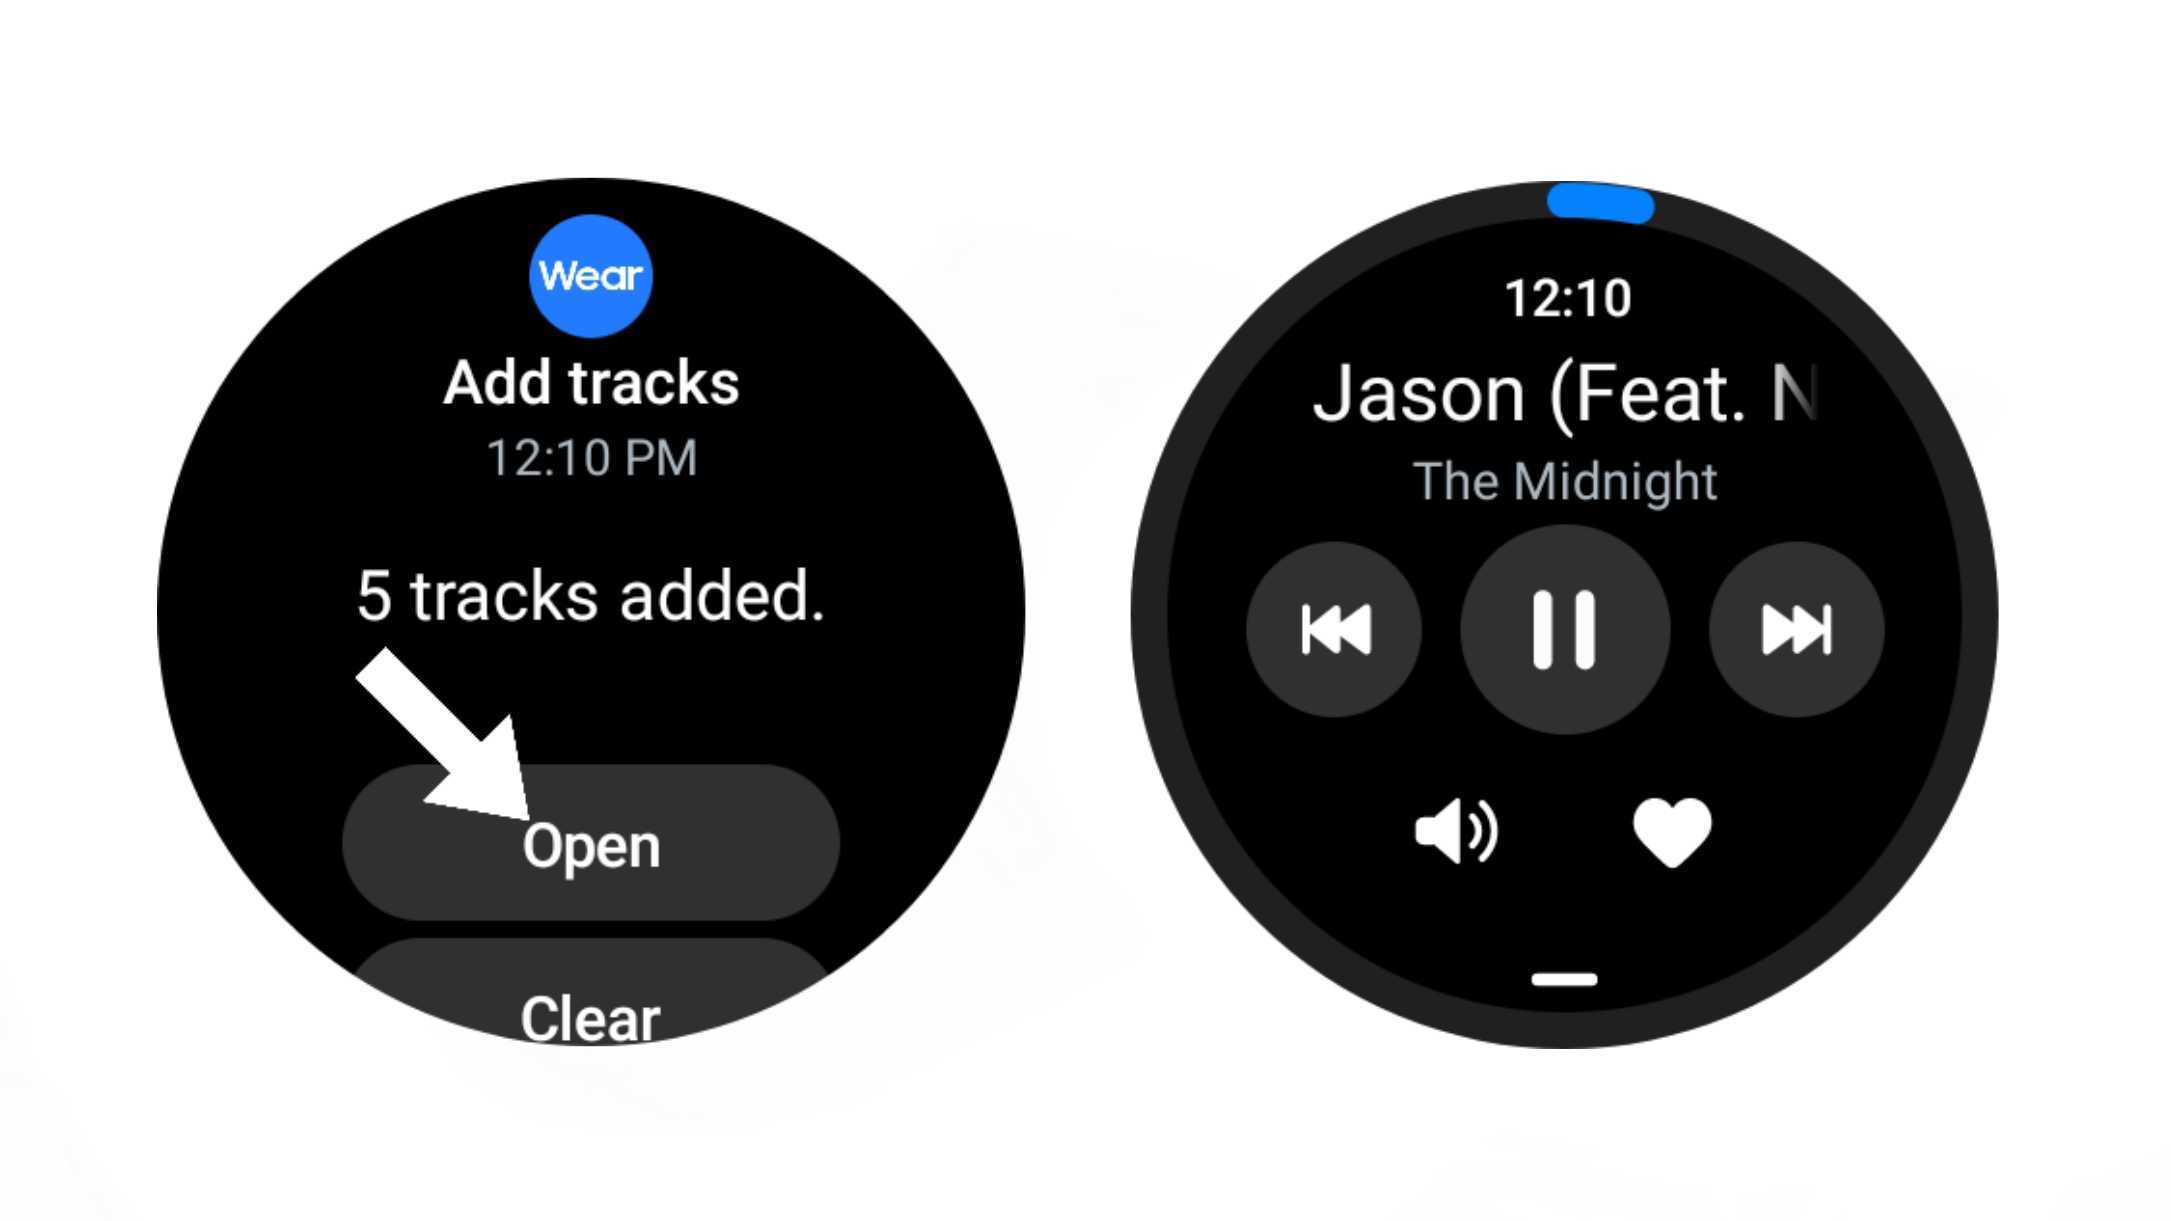 Añade música al Galaxy Watch desde tu smartphone